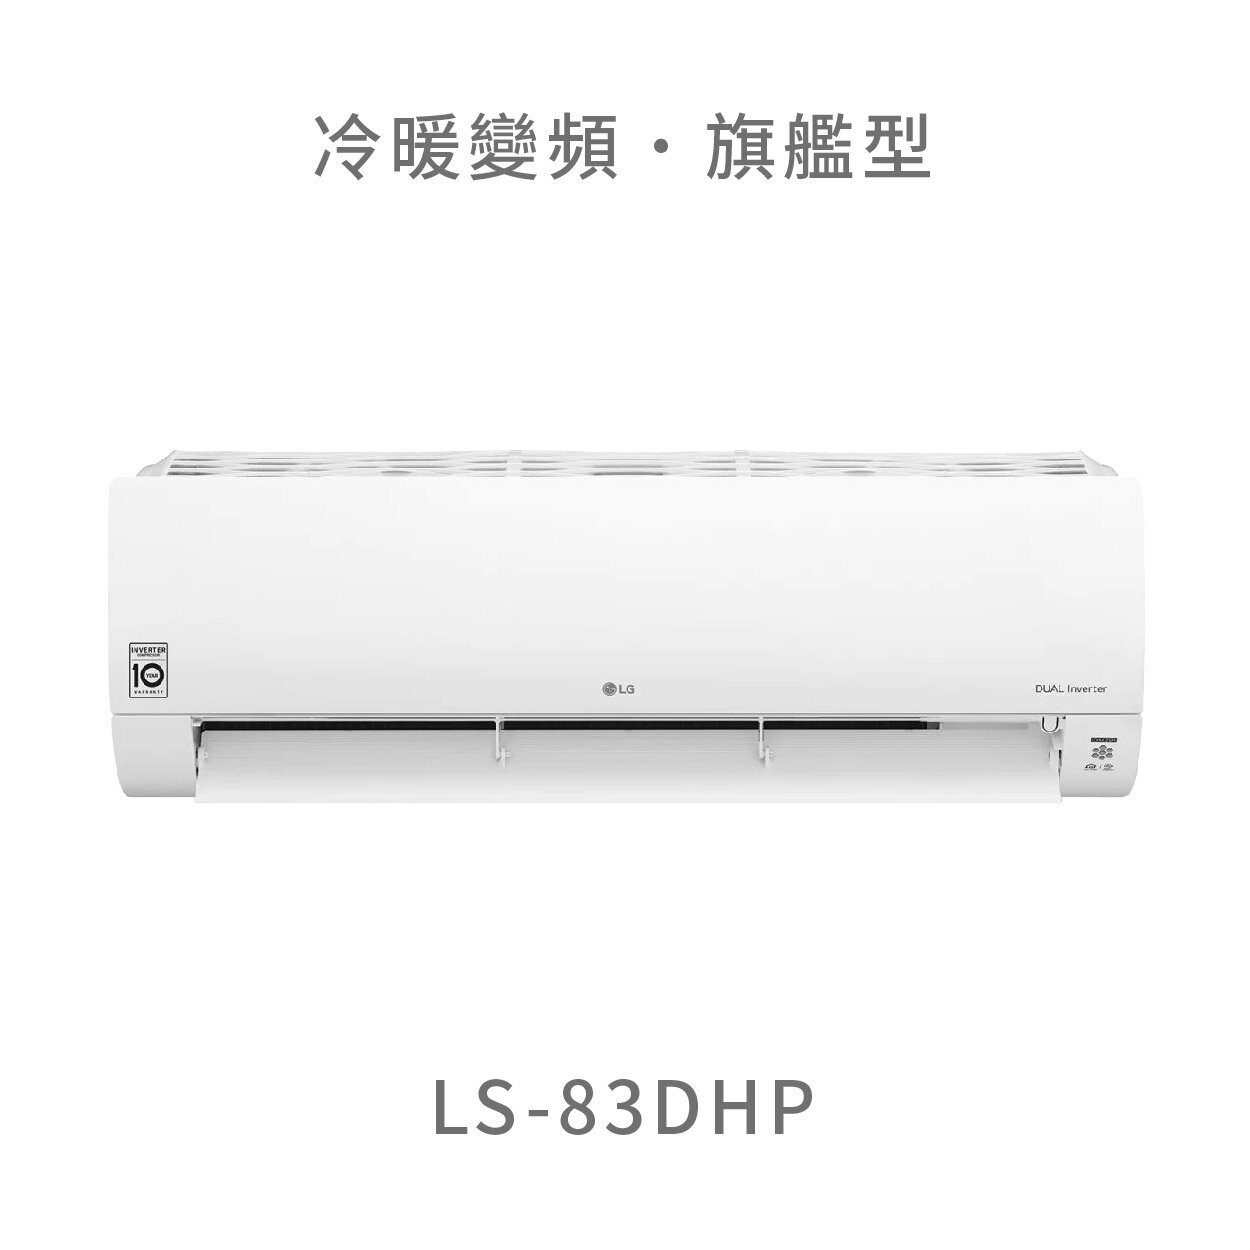 【點數10%回饋】【標準安裝費用另計】LG LS-83DHP 8.3kw WiFi雙迴轉變頻空調 - 旗艦冷暖型